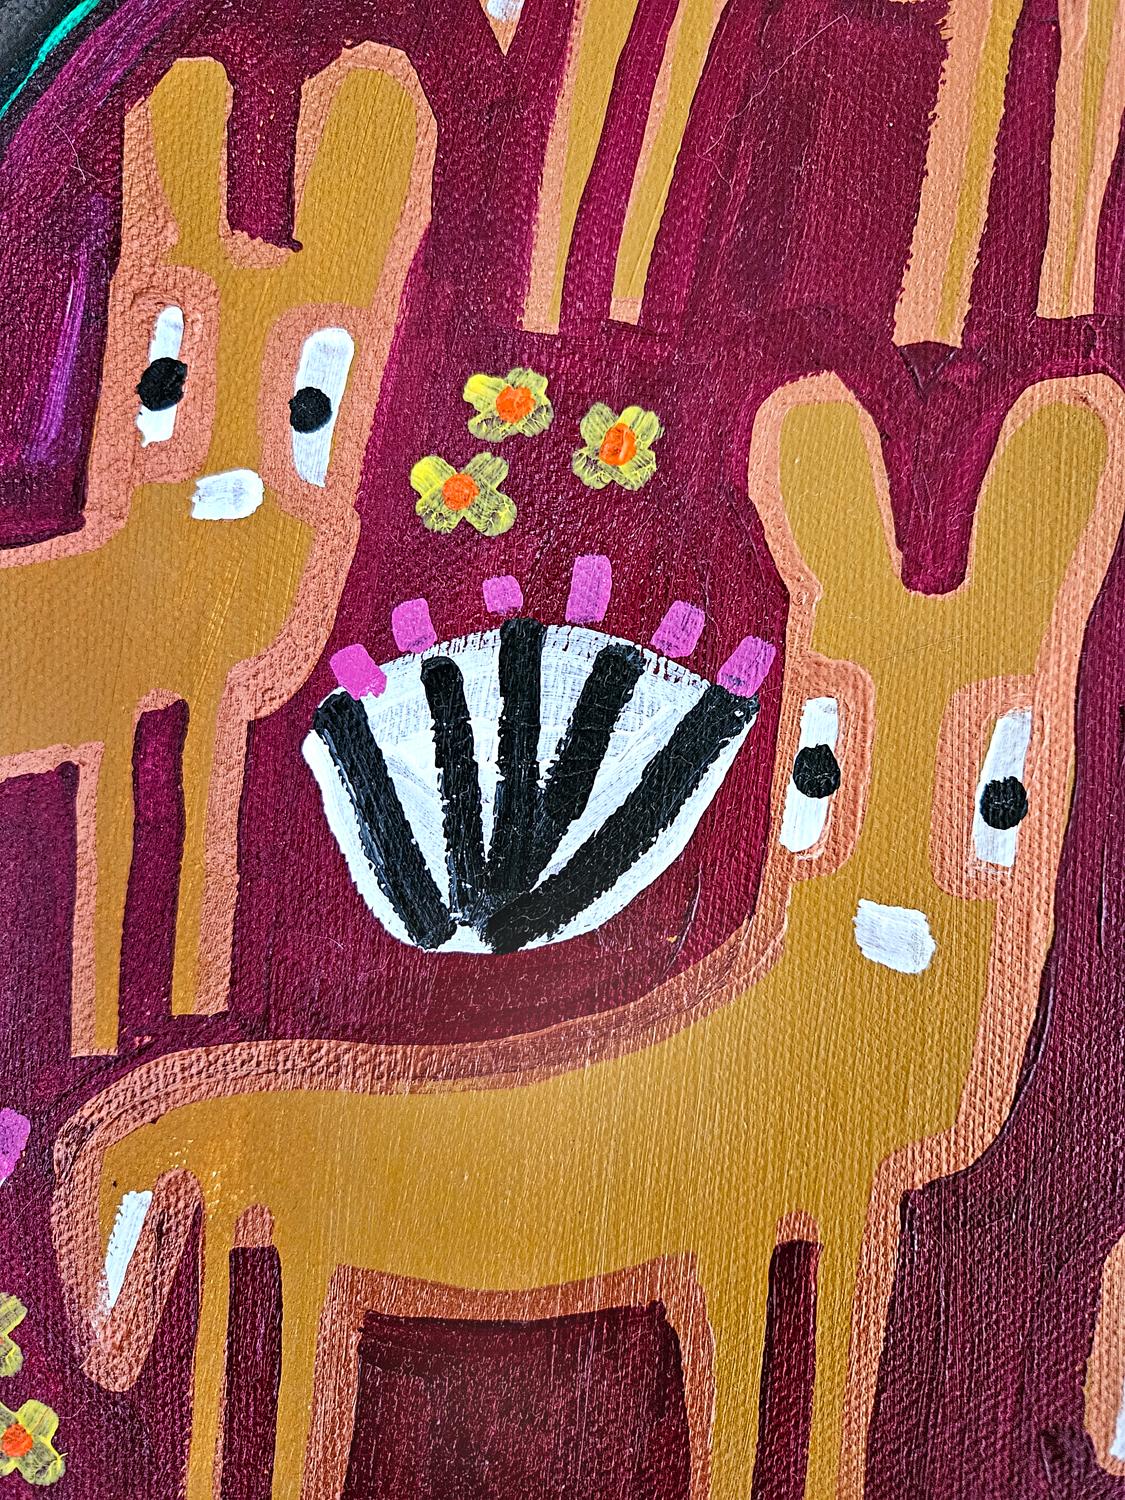 <p>Kommentare des Künstlers<br>Auf diesem skurrilen Gemälde streift eine Hirschfamilie durch ein Naturschutzgebiet. Eine Eule hockt auf einem der Bäume und beobachtet still das Treiben im Wald. Eine Fülle von Blumen schmückt die Szene und trägt zum